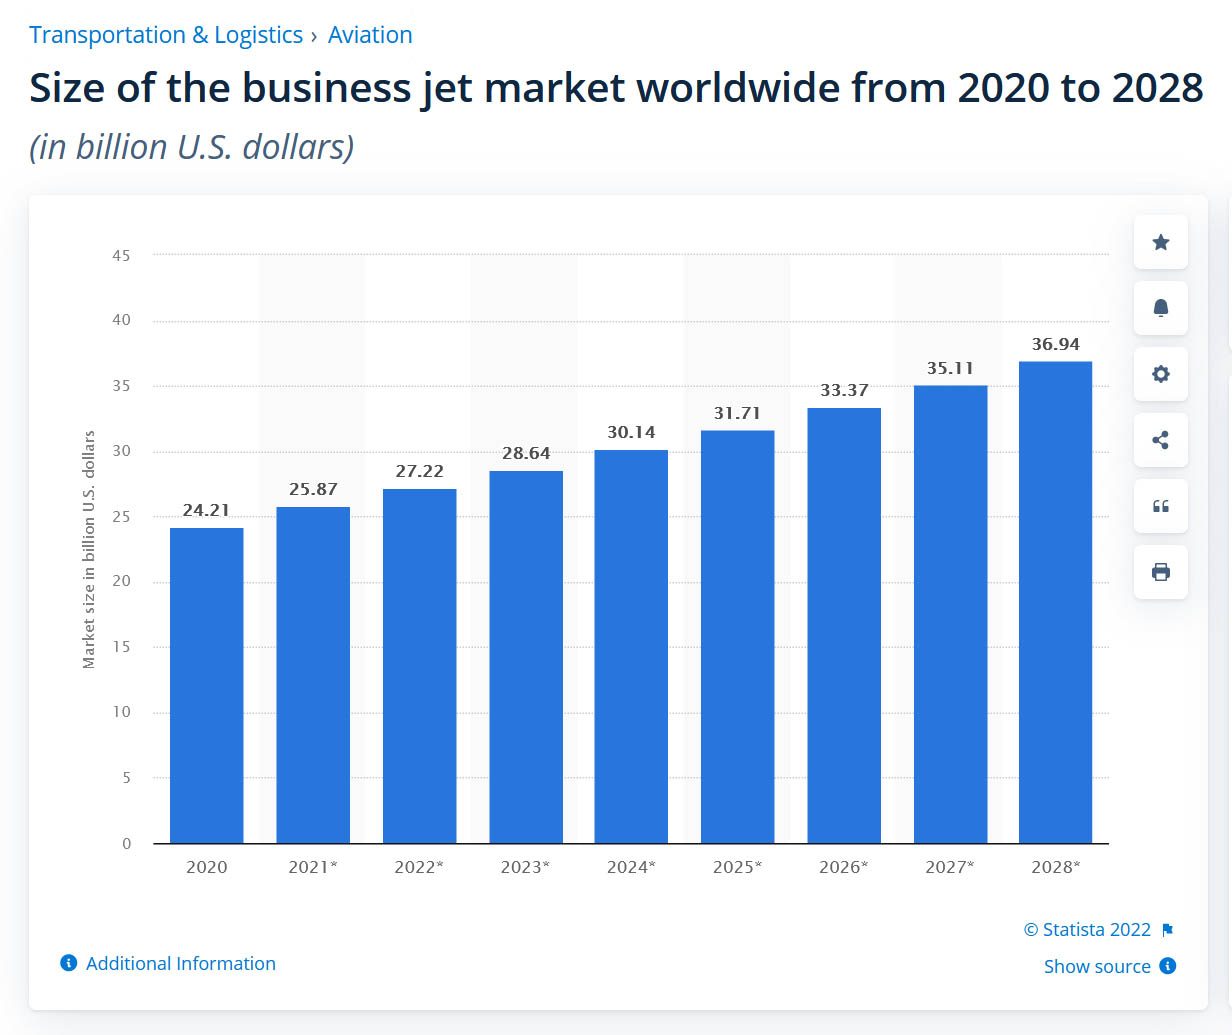 Le marché des jets privés ne devrait pas connaître la crise financière. Pour la climatique, on repassera par contre.